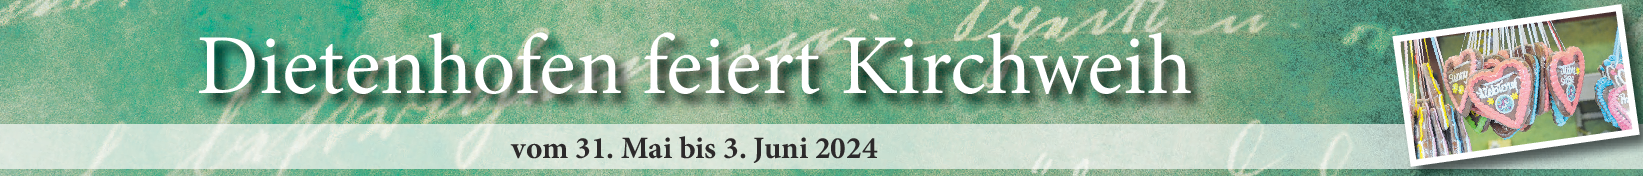 Kirchweih in Dietenhofen vom 31. Mai bis 3. Juni: "Fröhliche Tage im oberen Bibertgrund"